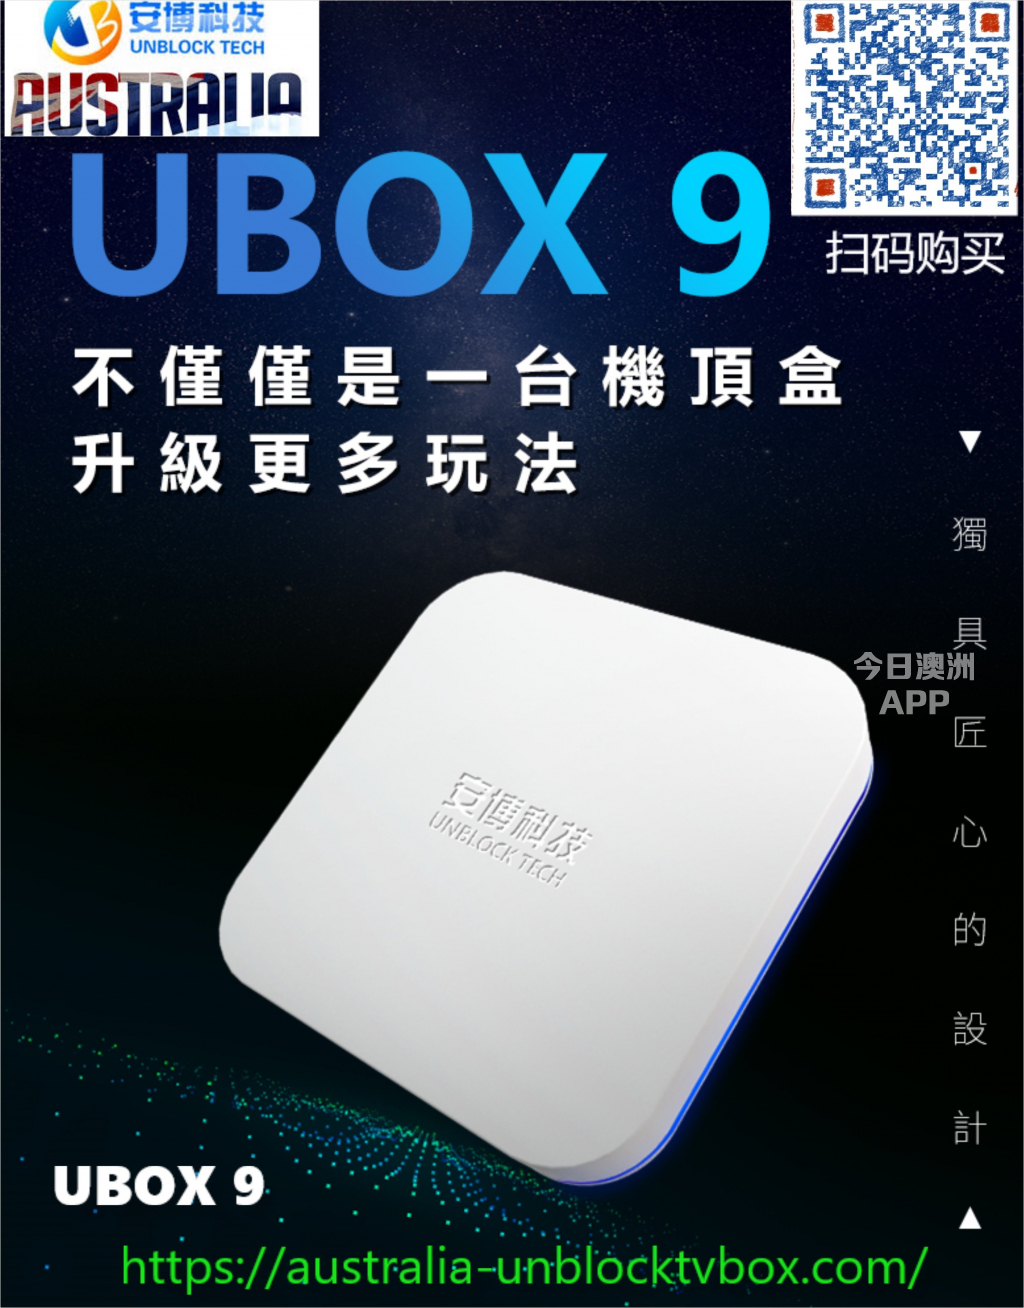 澳洲唯一 一家安博9代澳洲官方授权代理 UBOX 9代 unblock tech tv box UBOX 9 Gen 9